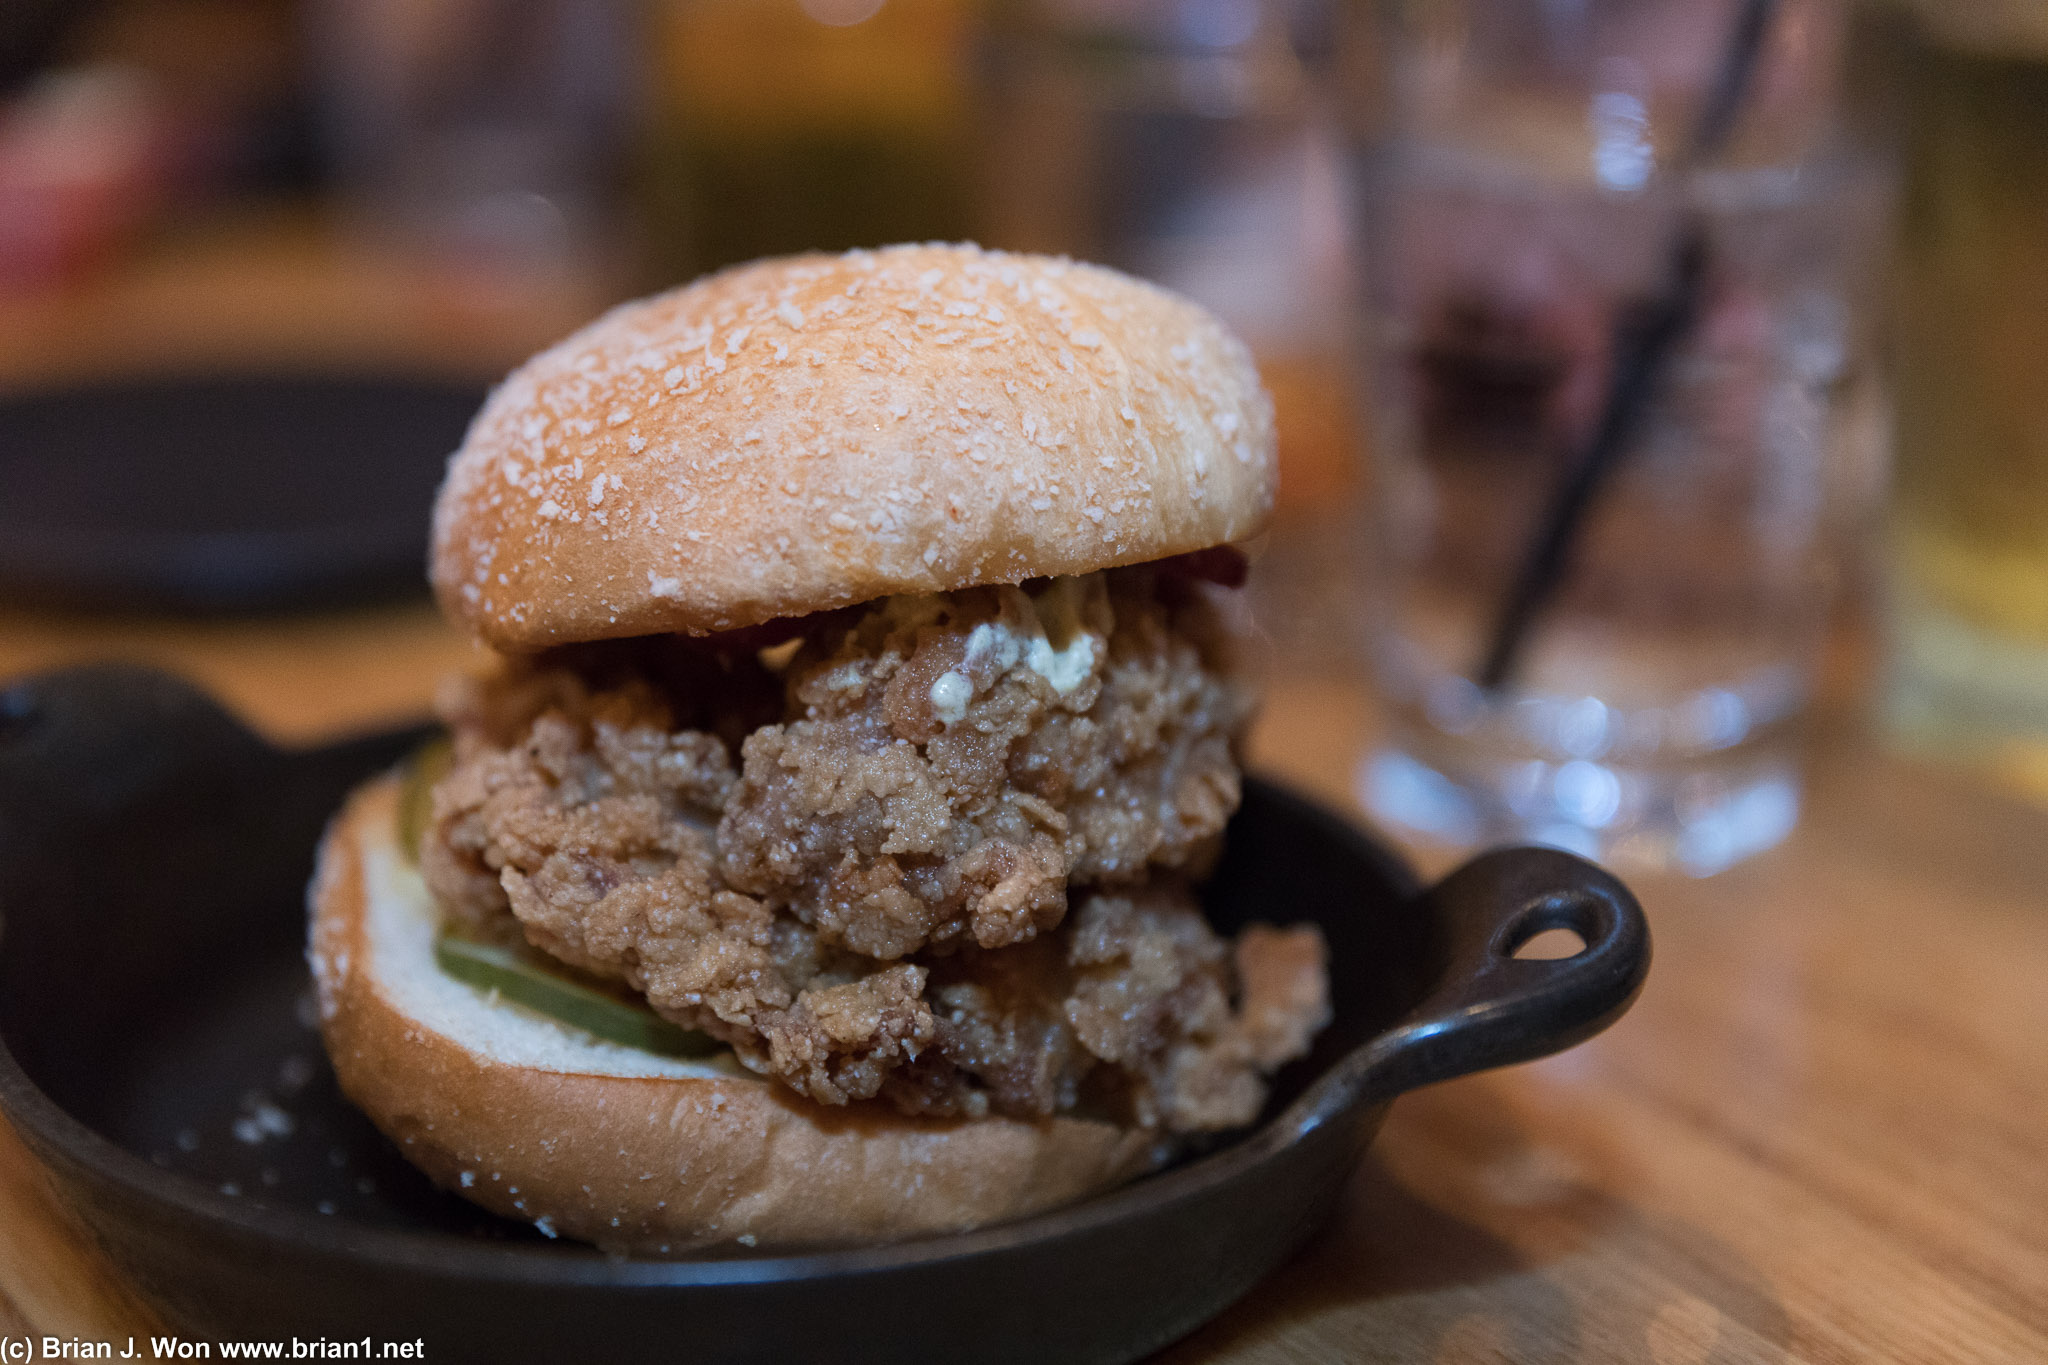 Jidori chicken burger with duck ham. Nom.